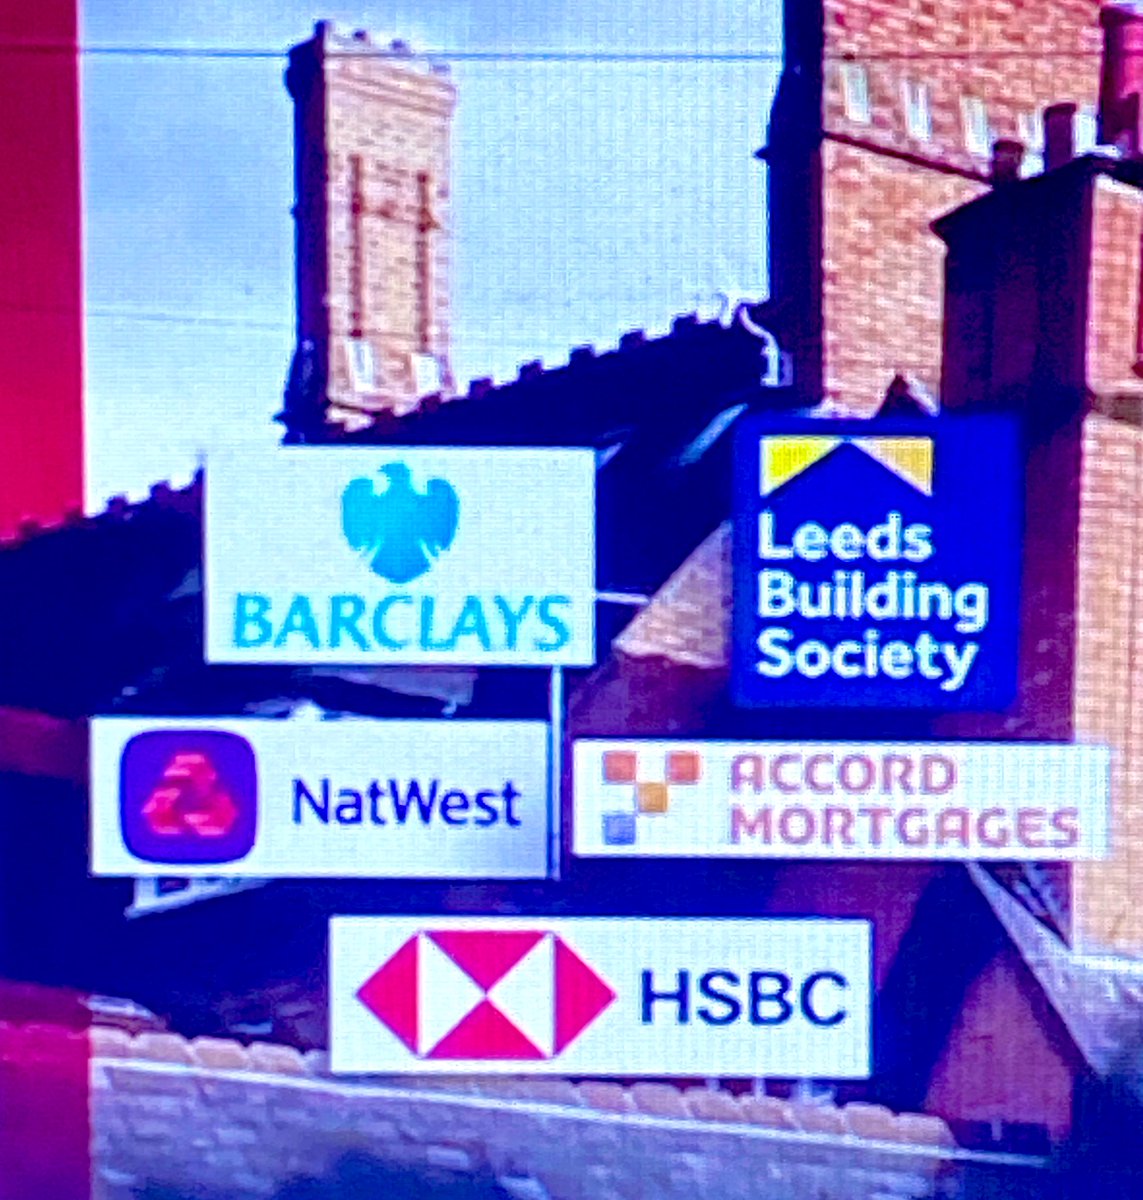 Barclays NatWest #bbcnewssix